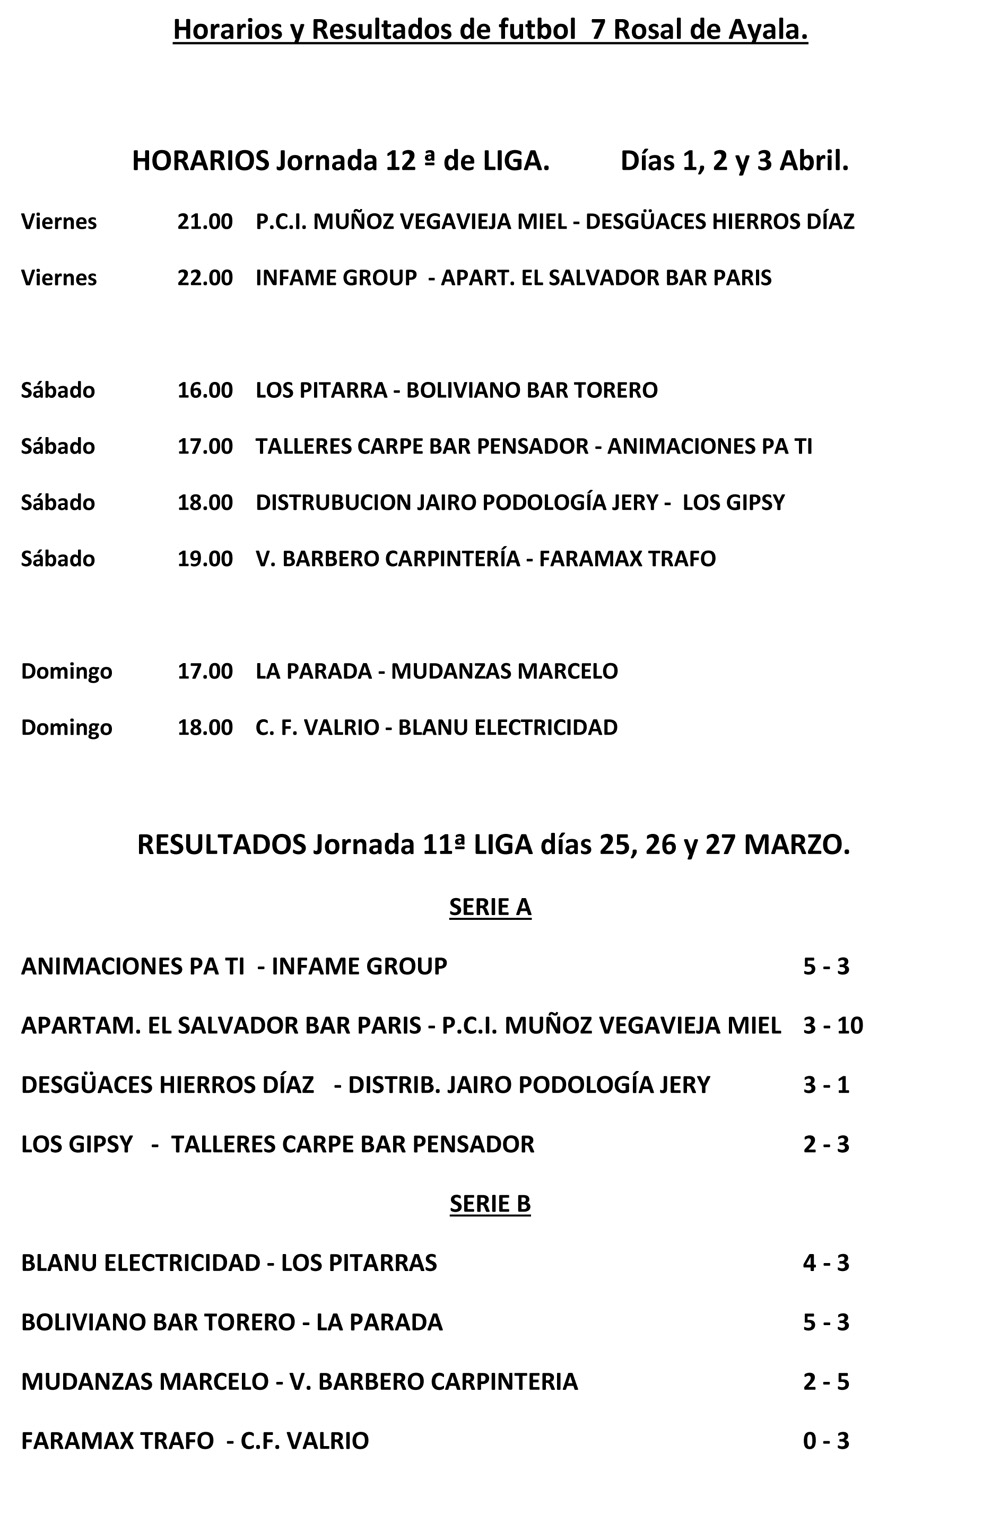 insertar matiz mal humor Resultados y horarios Fútbol-7 Rosal de Ayala 2021/2022. 12ª Jornada Liga (1,  2 y 3 de abril) - Estadio Norte